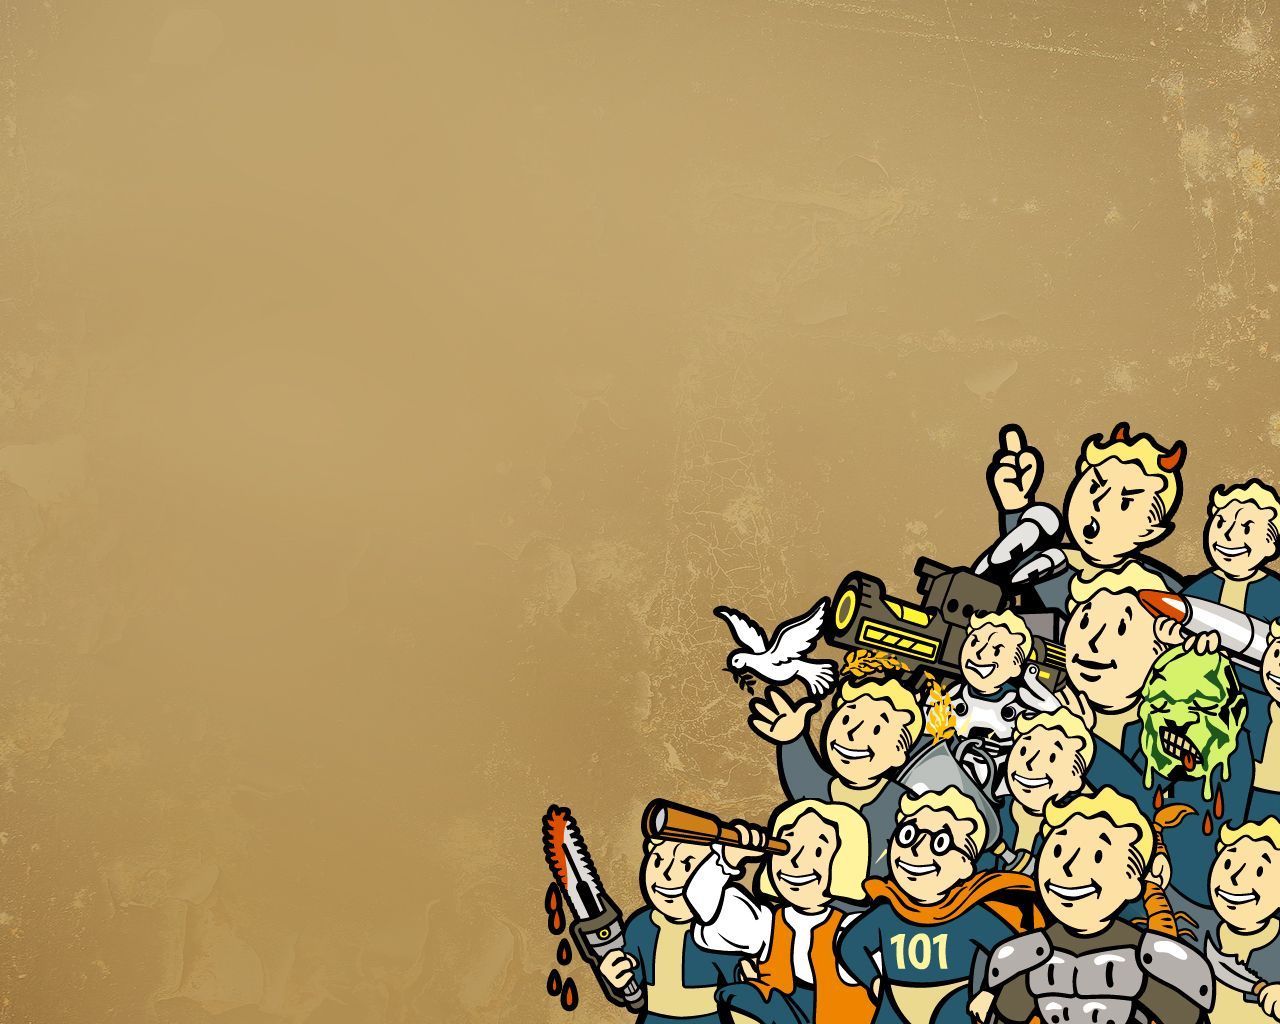 Fallout 4 HD Wallpaper | 1920x1080 | ID:57012